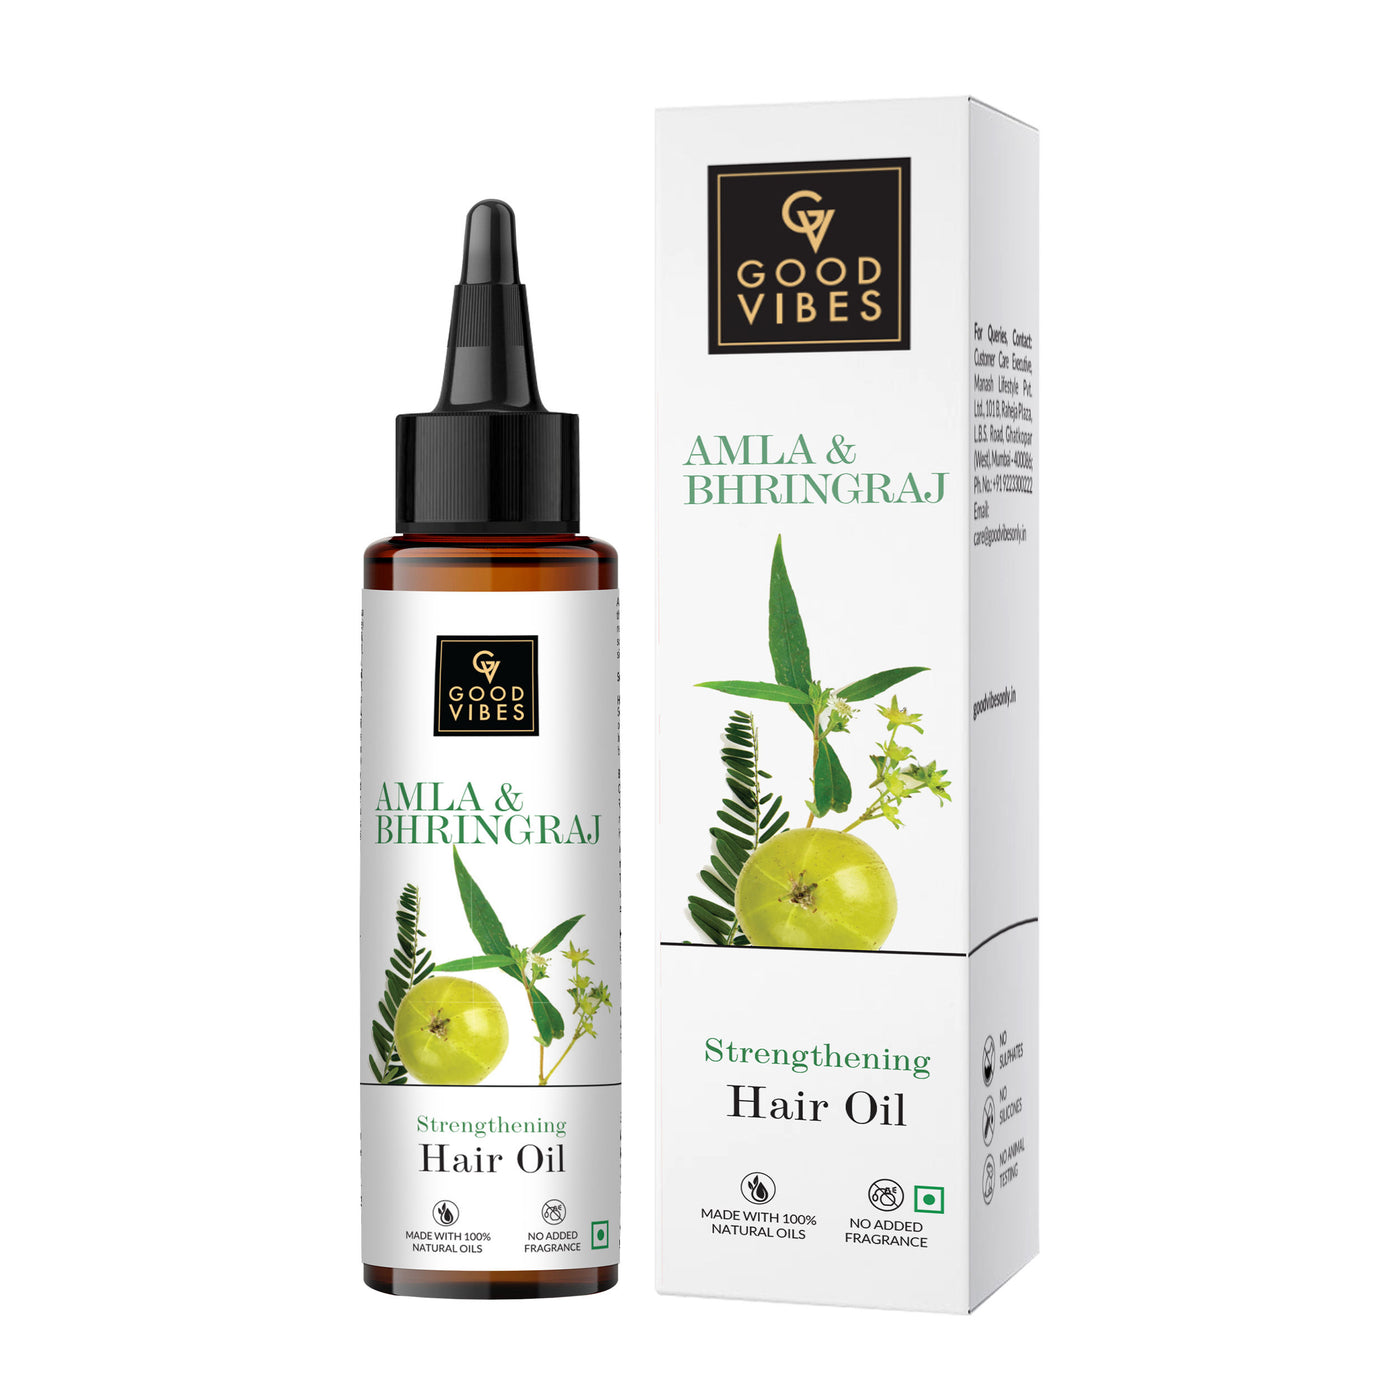 Good Vibes Amla & Bhringraj Strengthening Hair Oil (100 ml) - 10